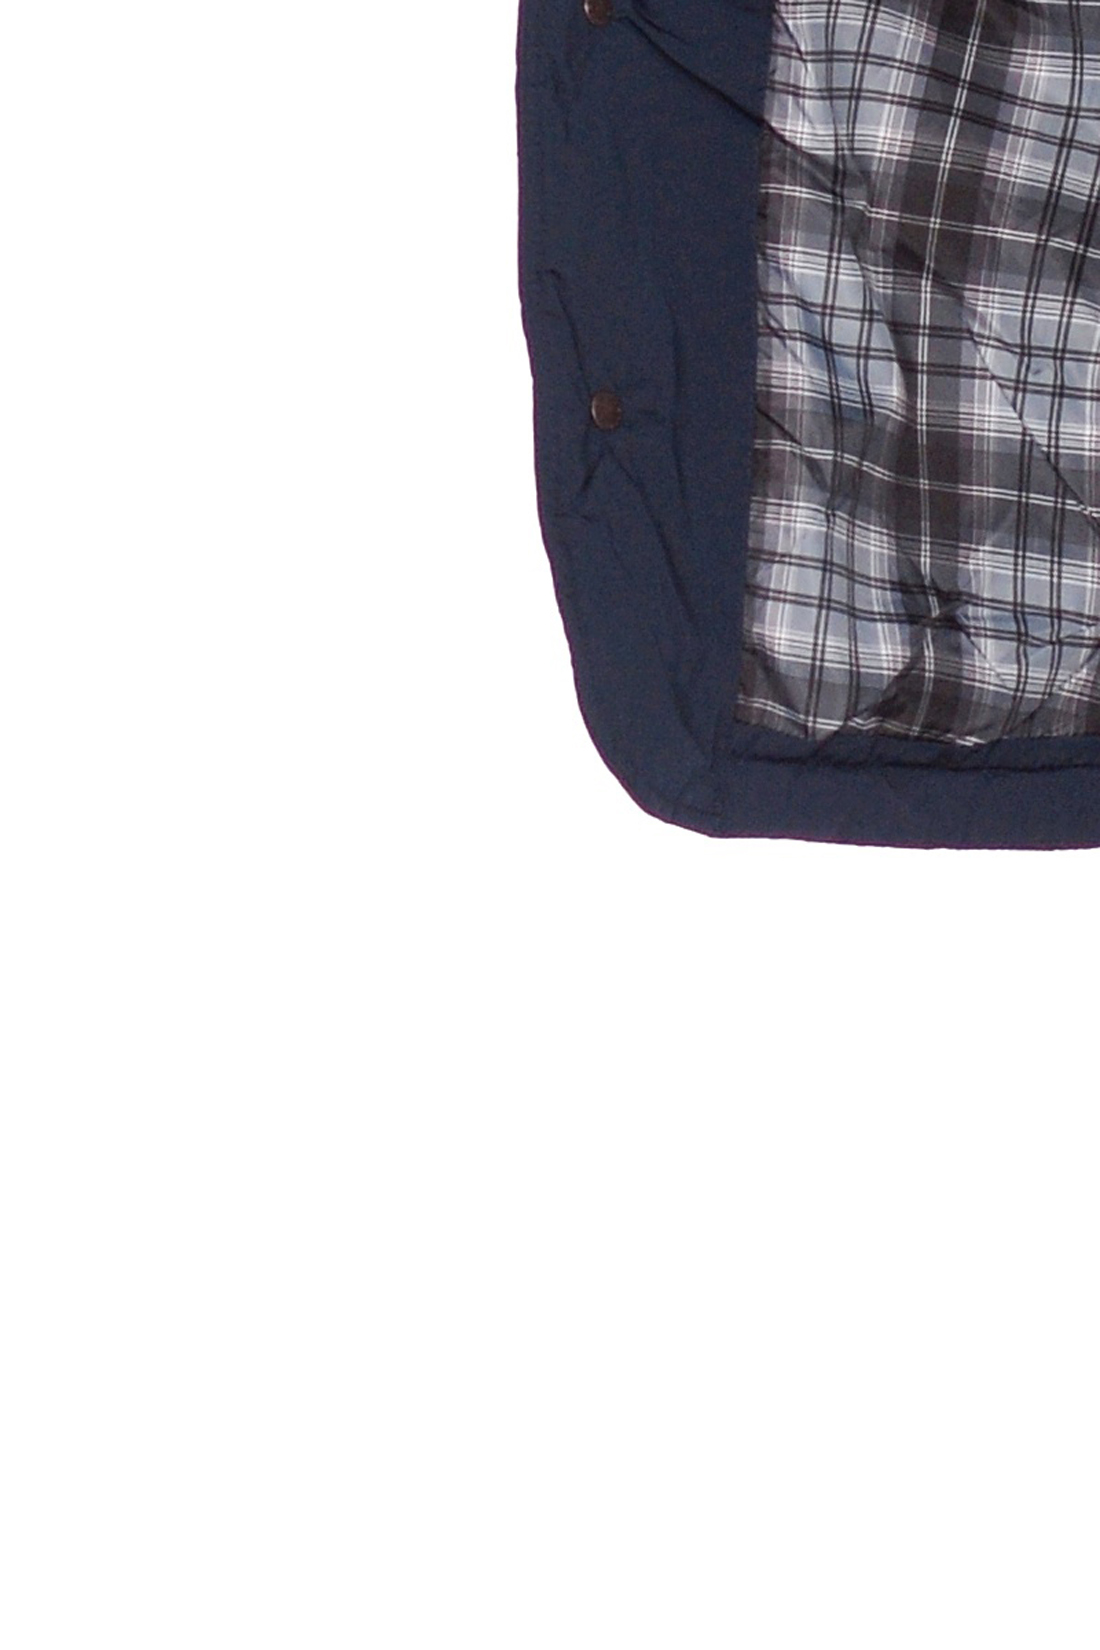 Стёганая куртка с тремя карманами (арт. baon B538503), размер XXL, цвет синий Стёганая куртка с тремя карманами (арт. baon B538503) - фото 2